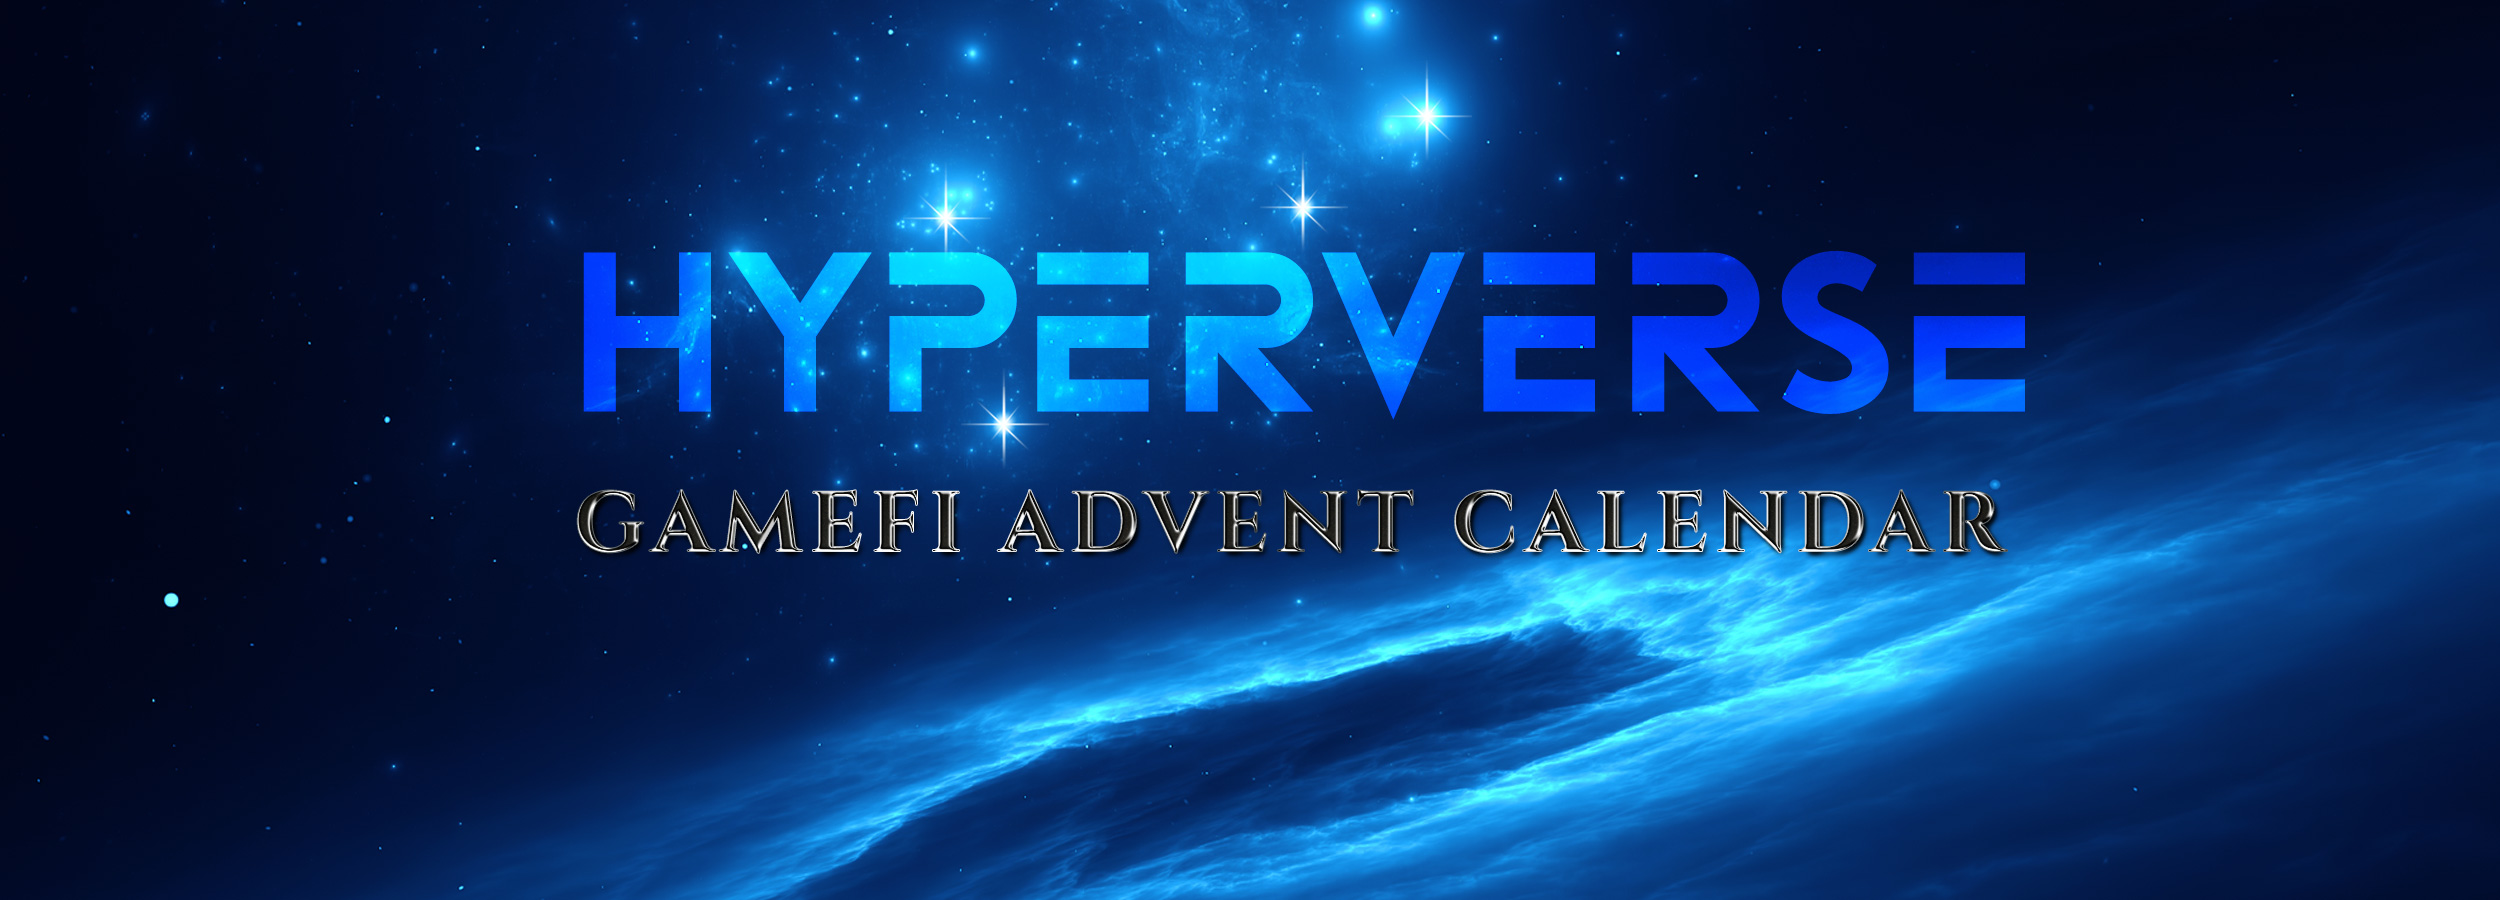 Hyperverse Calendar